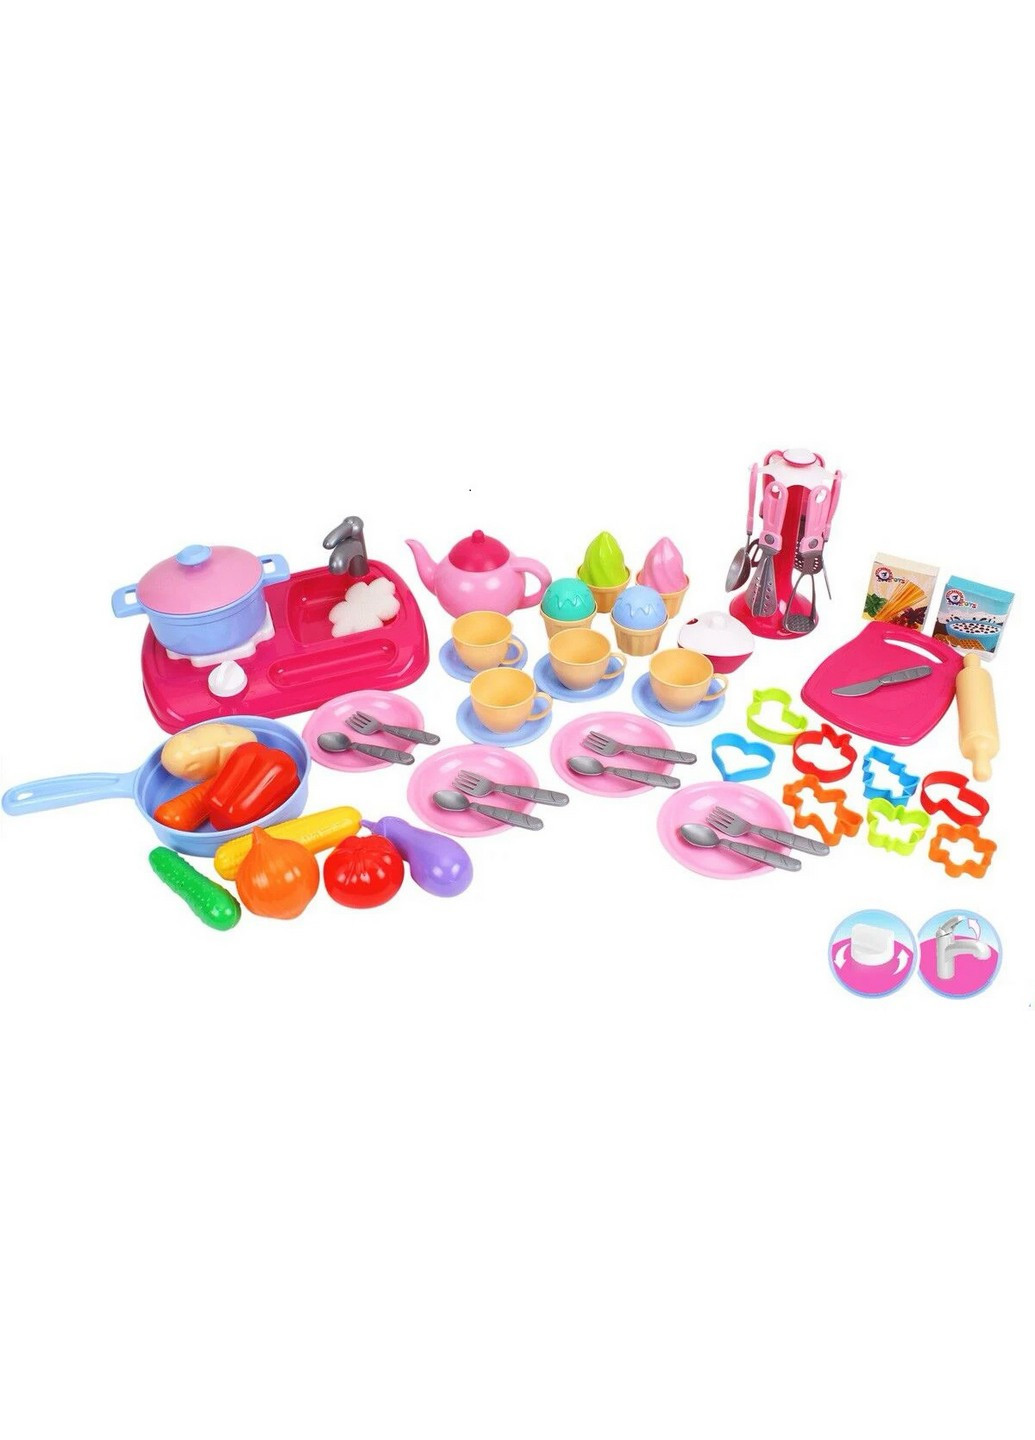 Дитячий ігровий набір "Кухня з набором посуду", 66 предметів 49х37х11 см ТехноК (259207609)